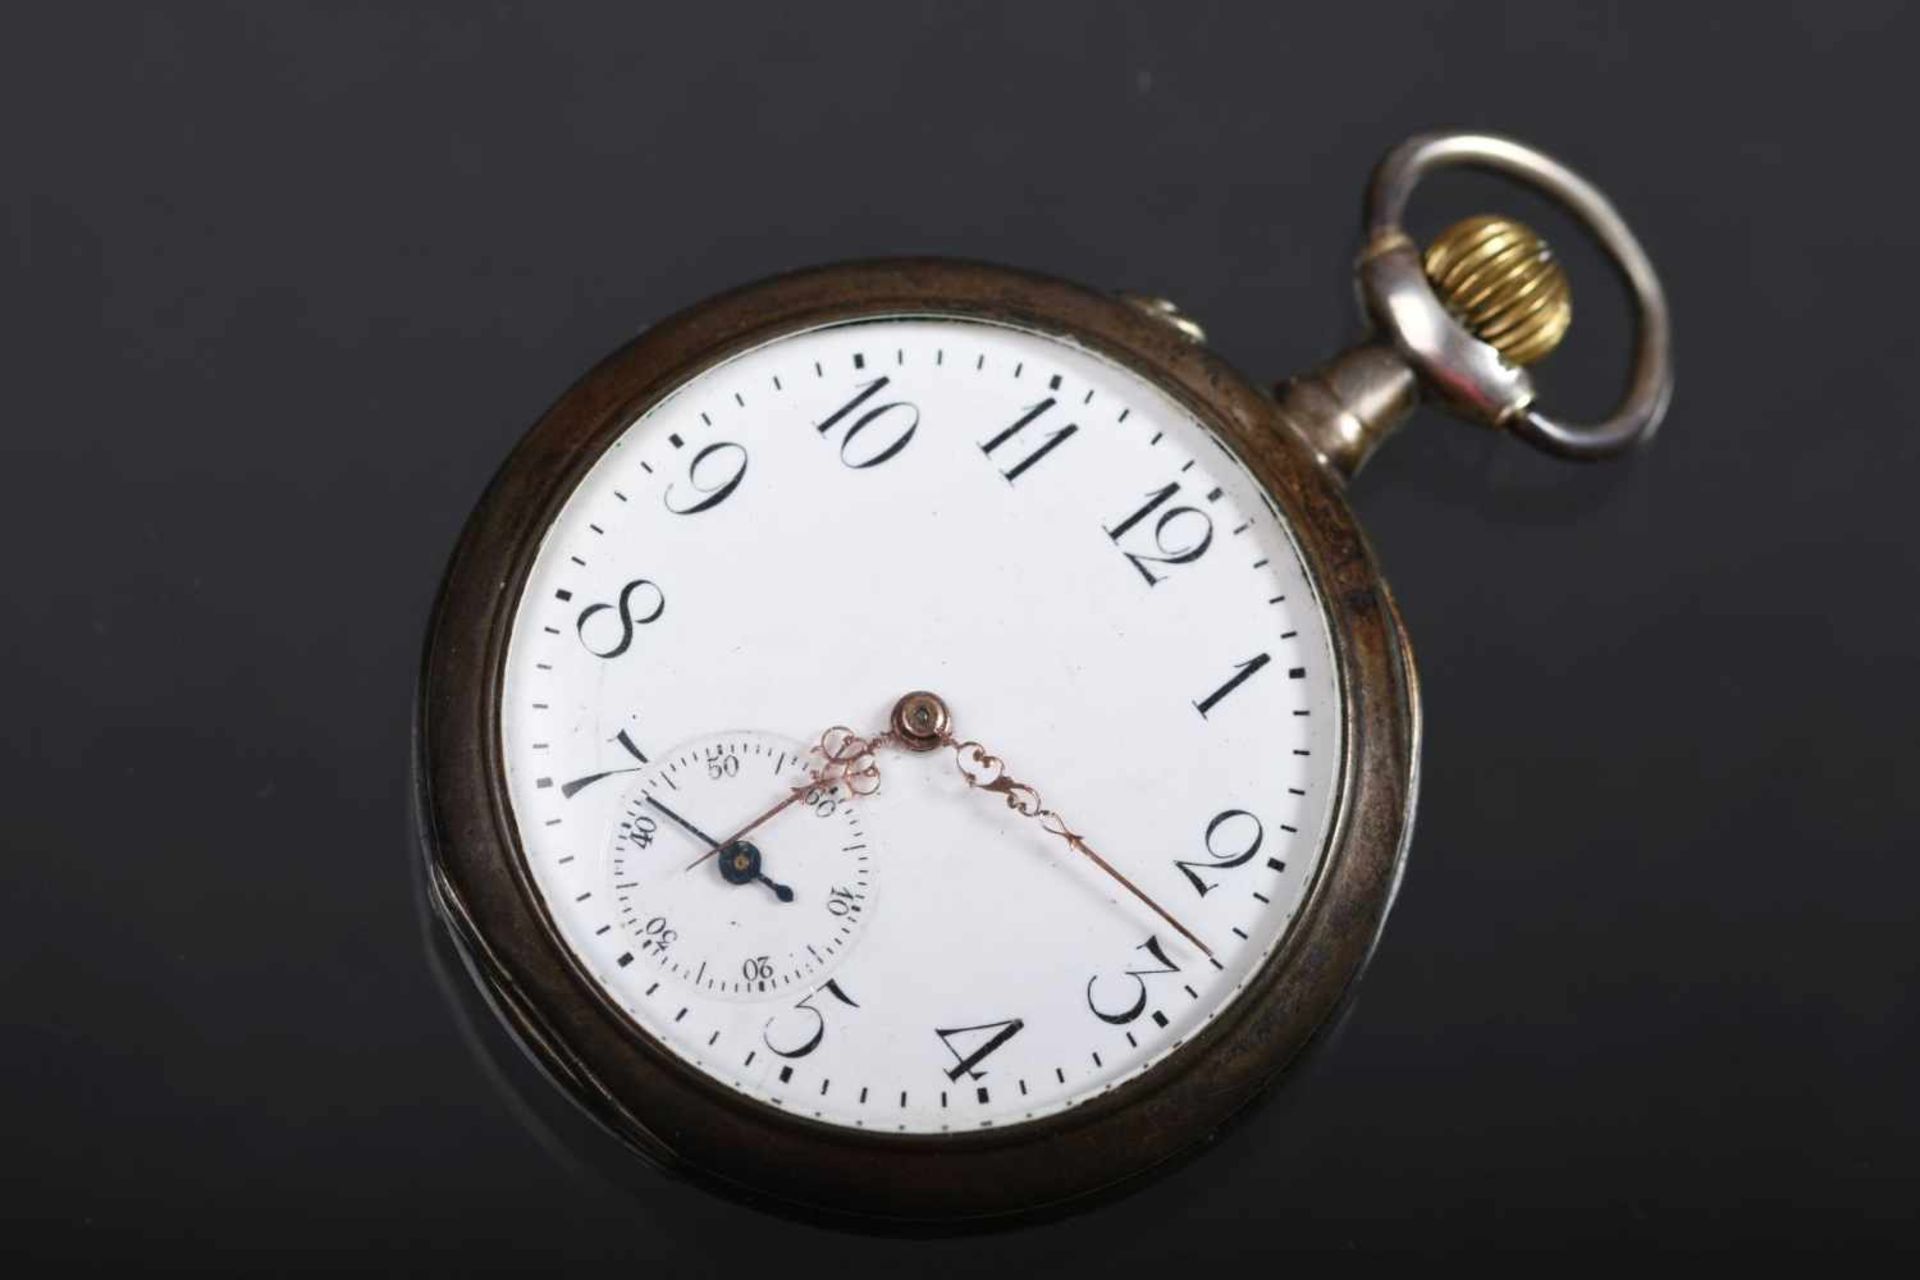 Taschenuhr, um 19102 Deckel Silber 800, arab. Minuterie, Sekunde bei der 6, gebläute Sekundenzeiger.